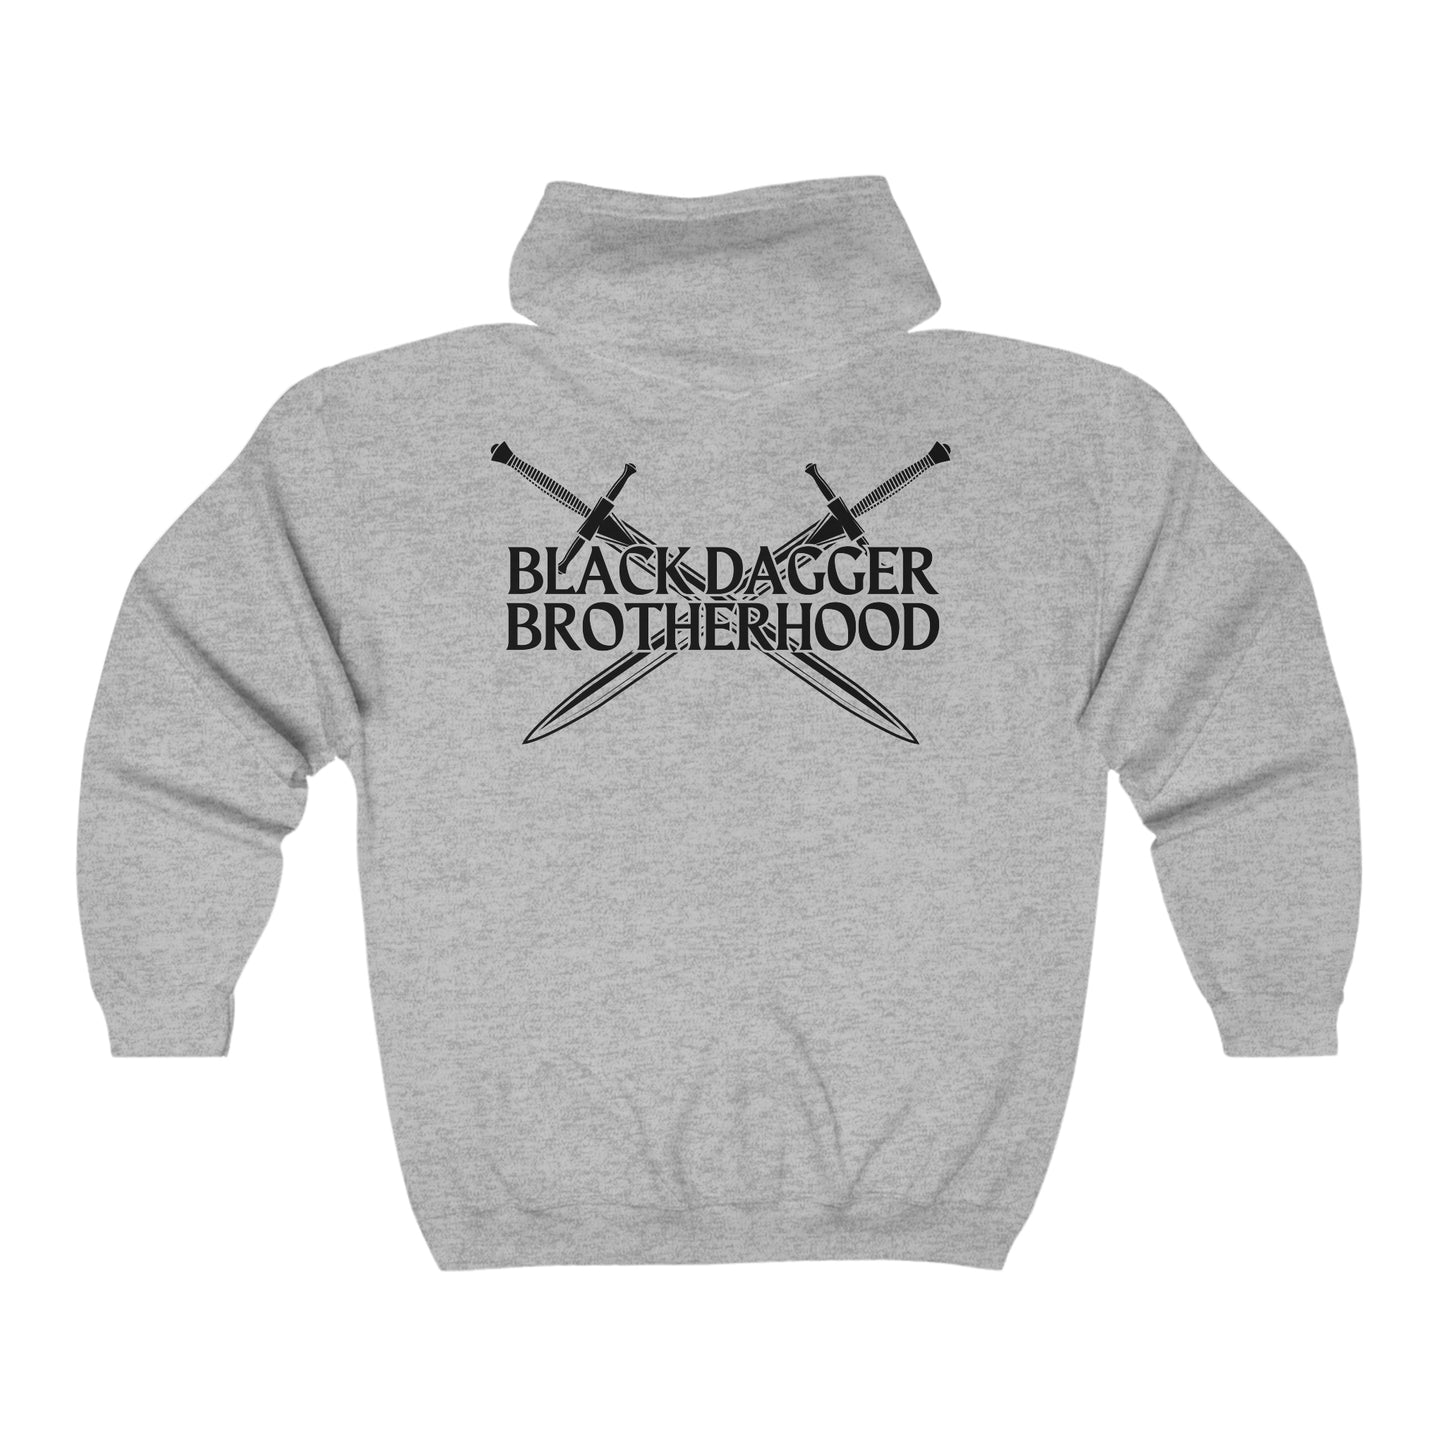 Black Dagger Brotherhood - Full Zip Hoodie